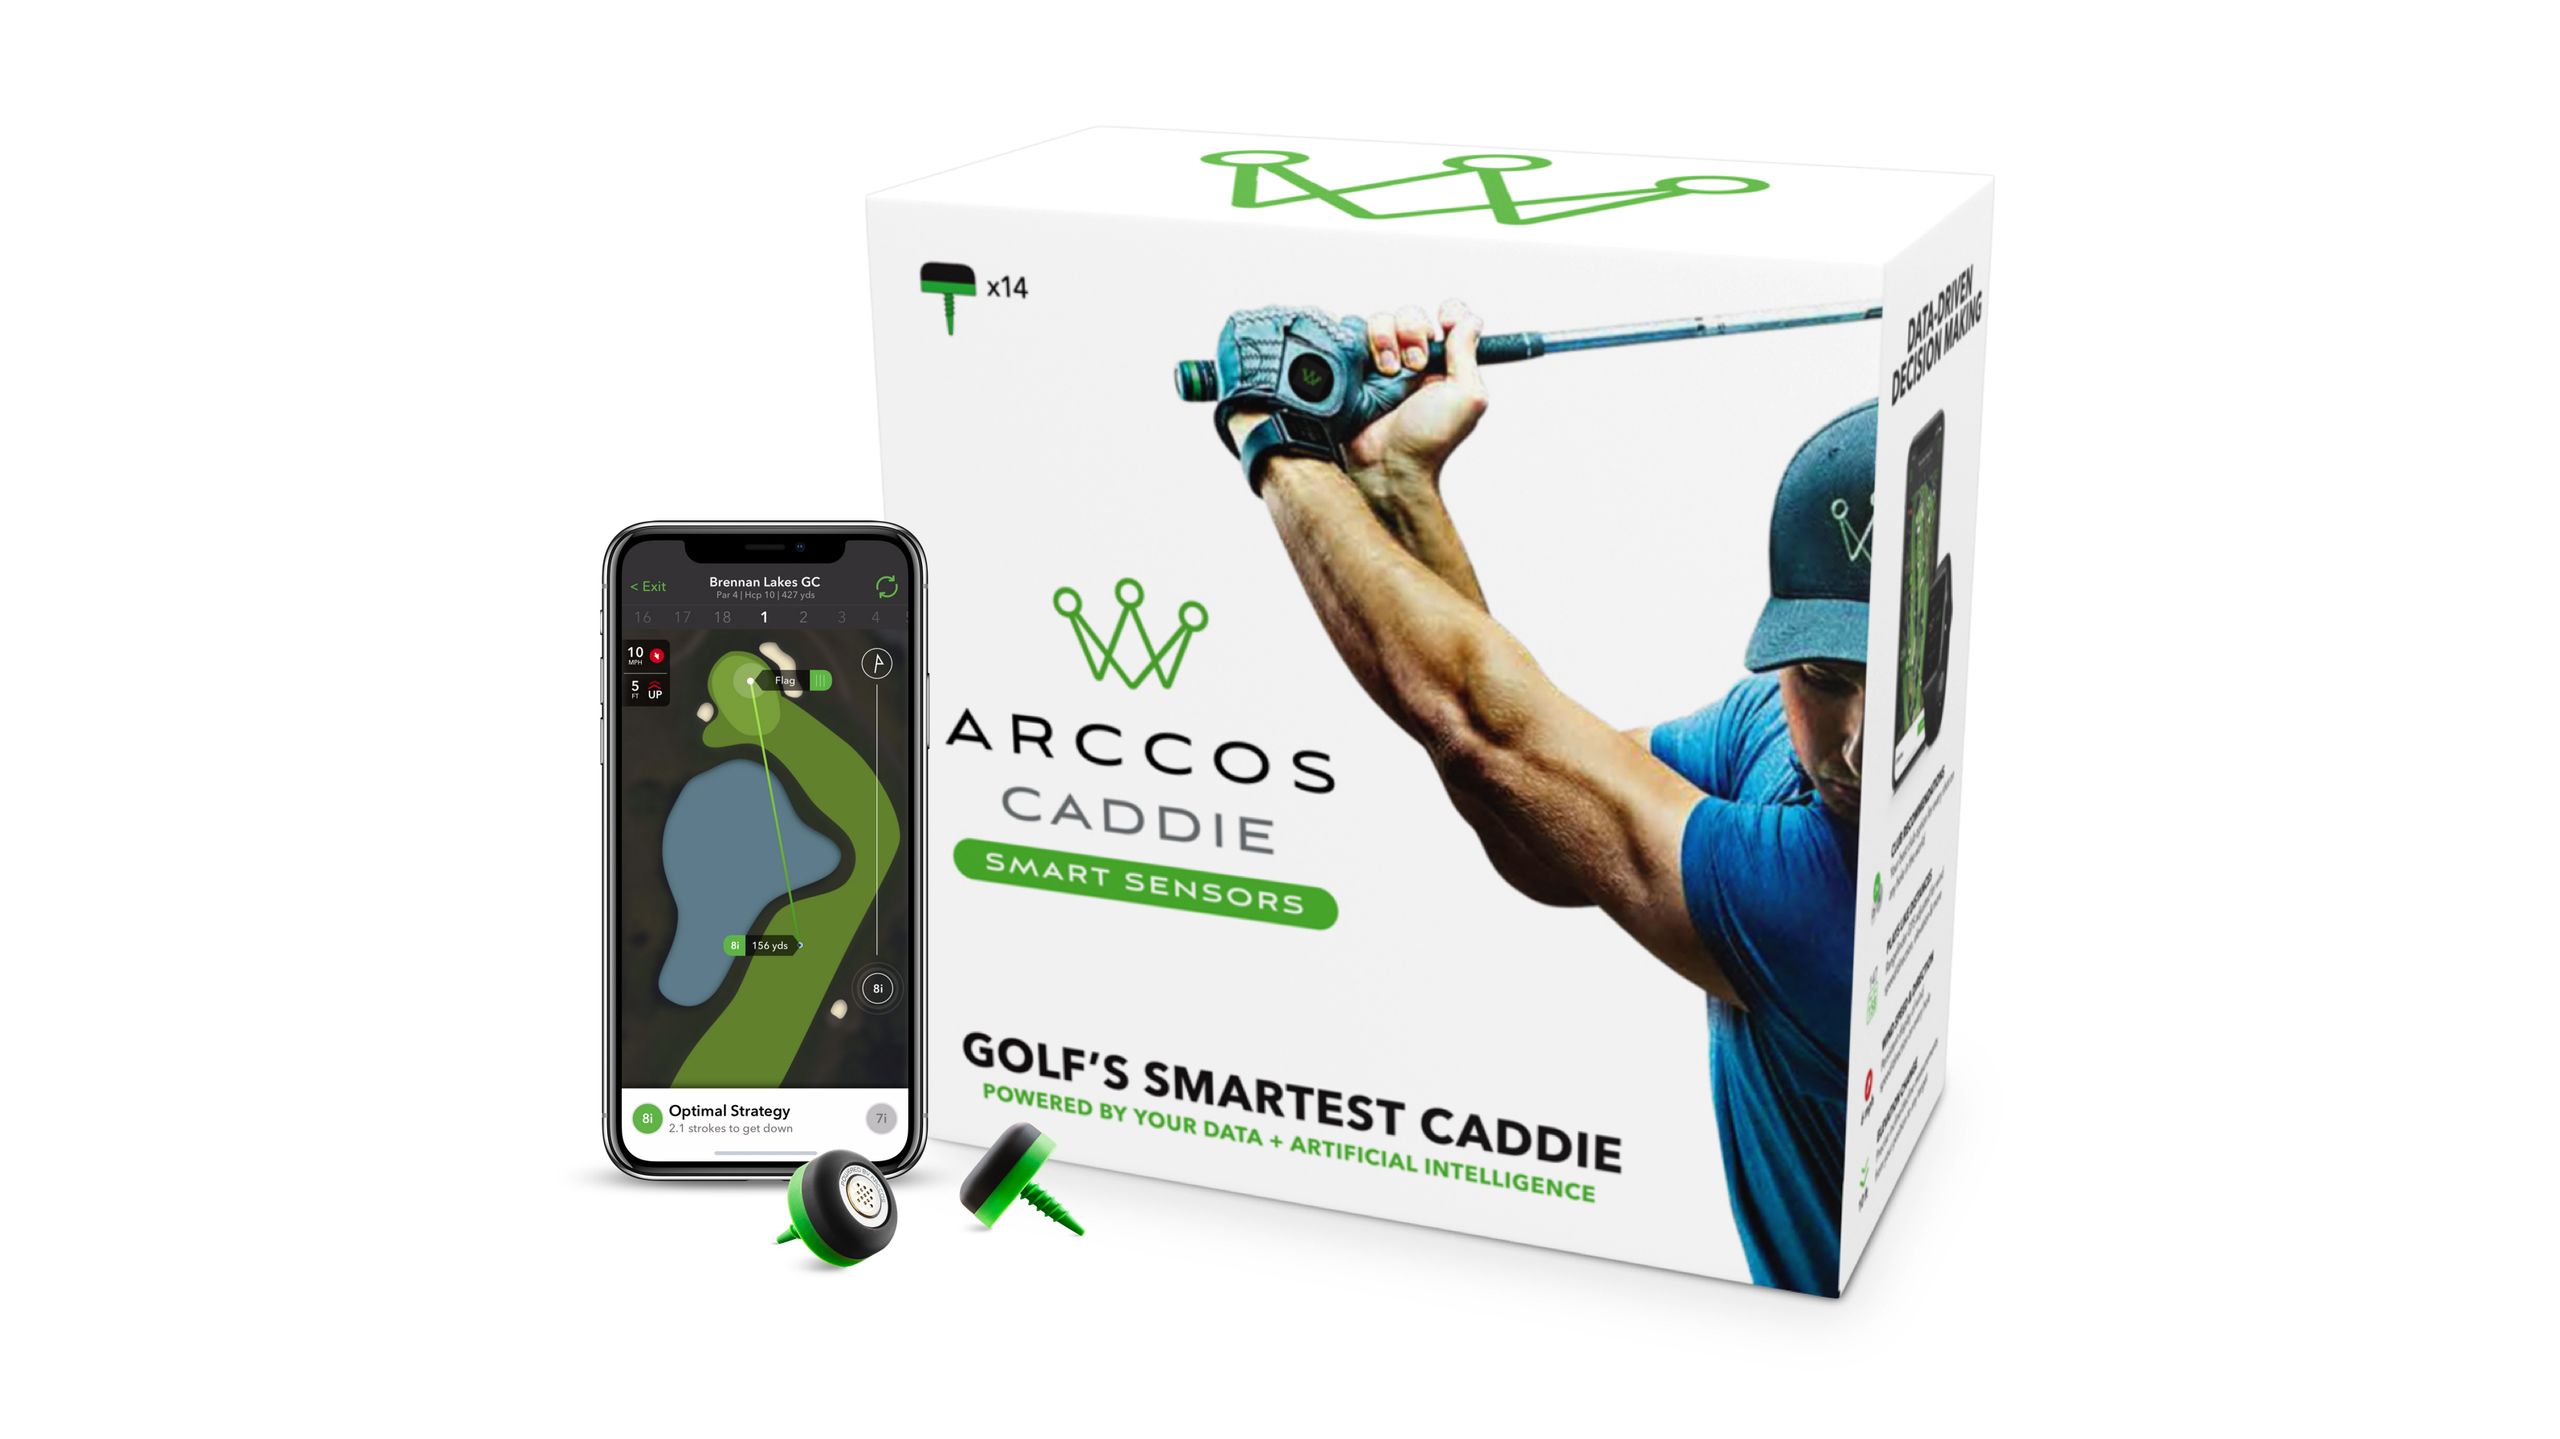 parhaat lahjat golfaajille: Arccos Caddie Smart Sensors